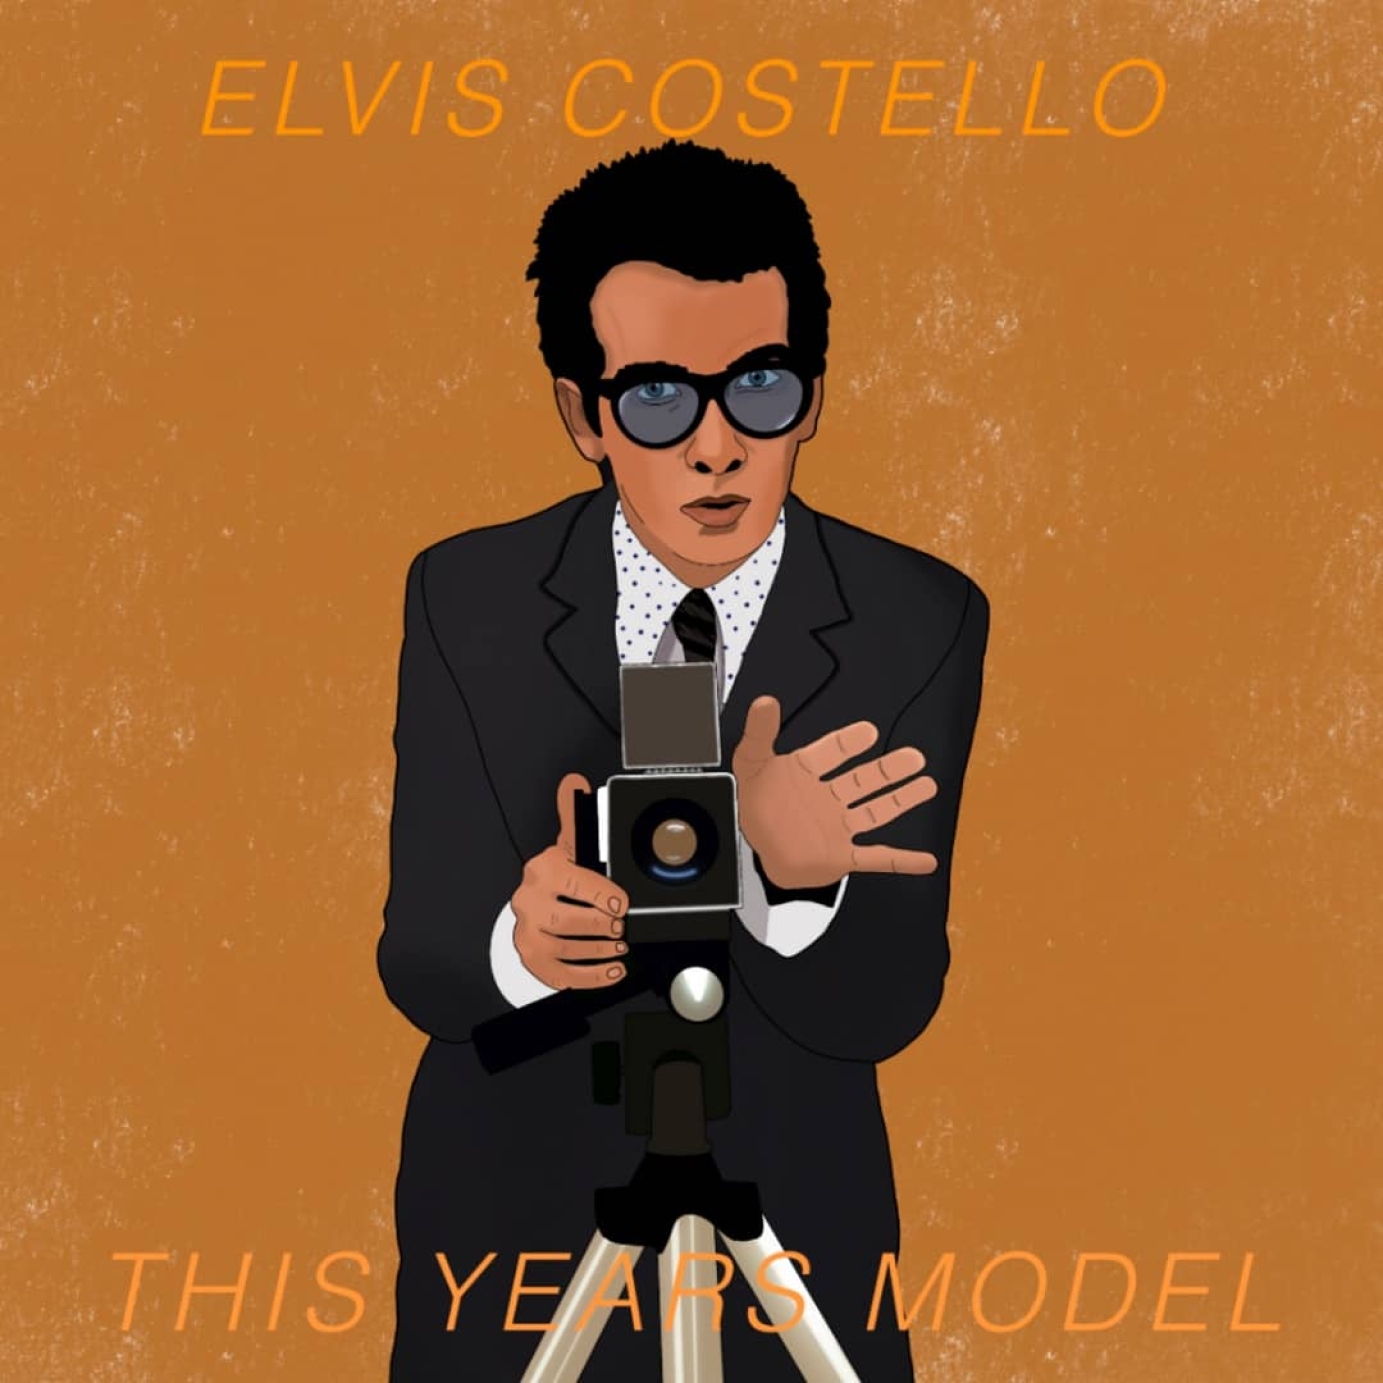 Elvis Costello reworked